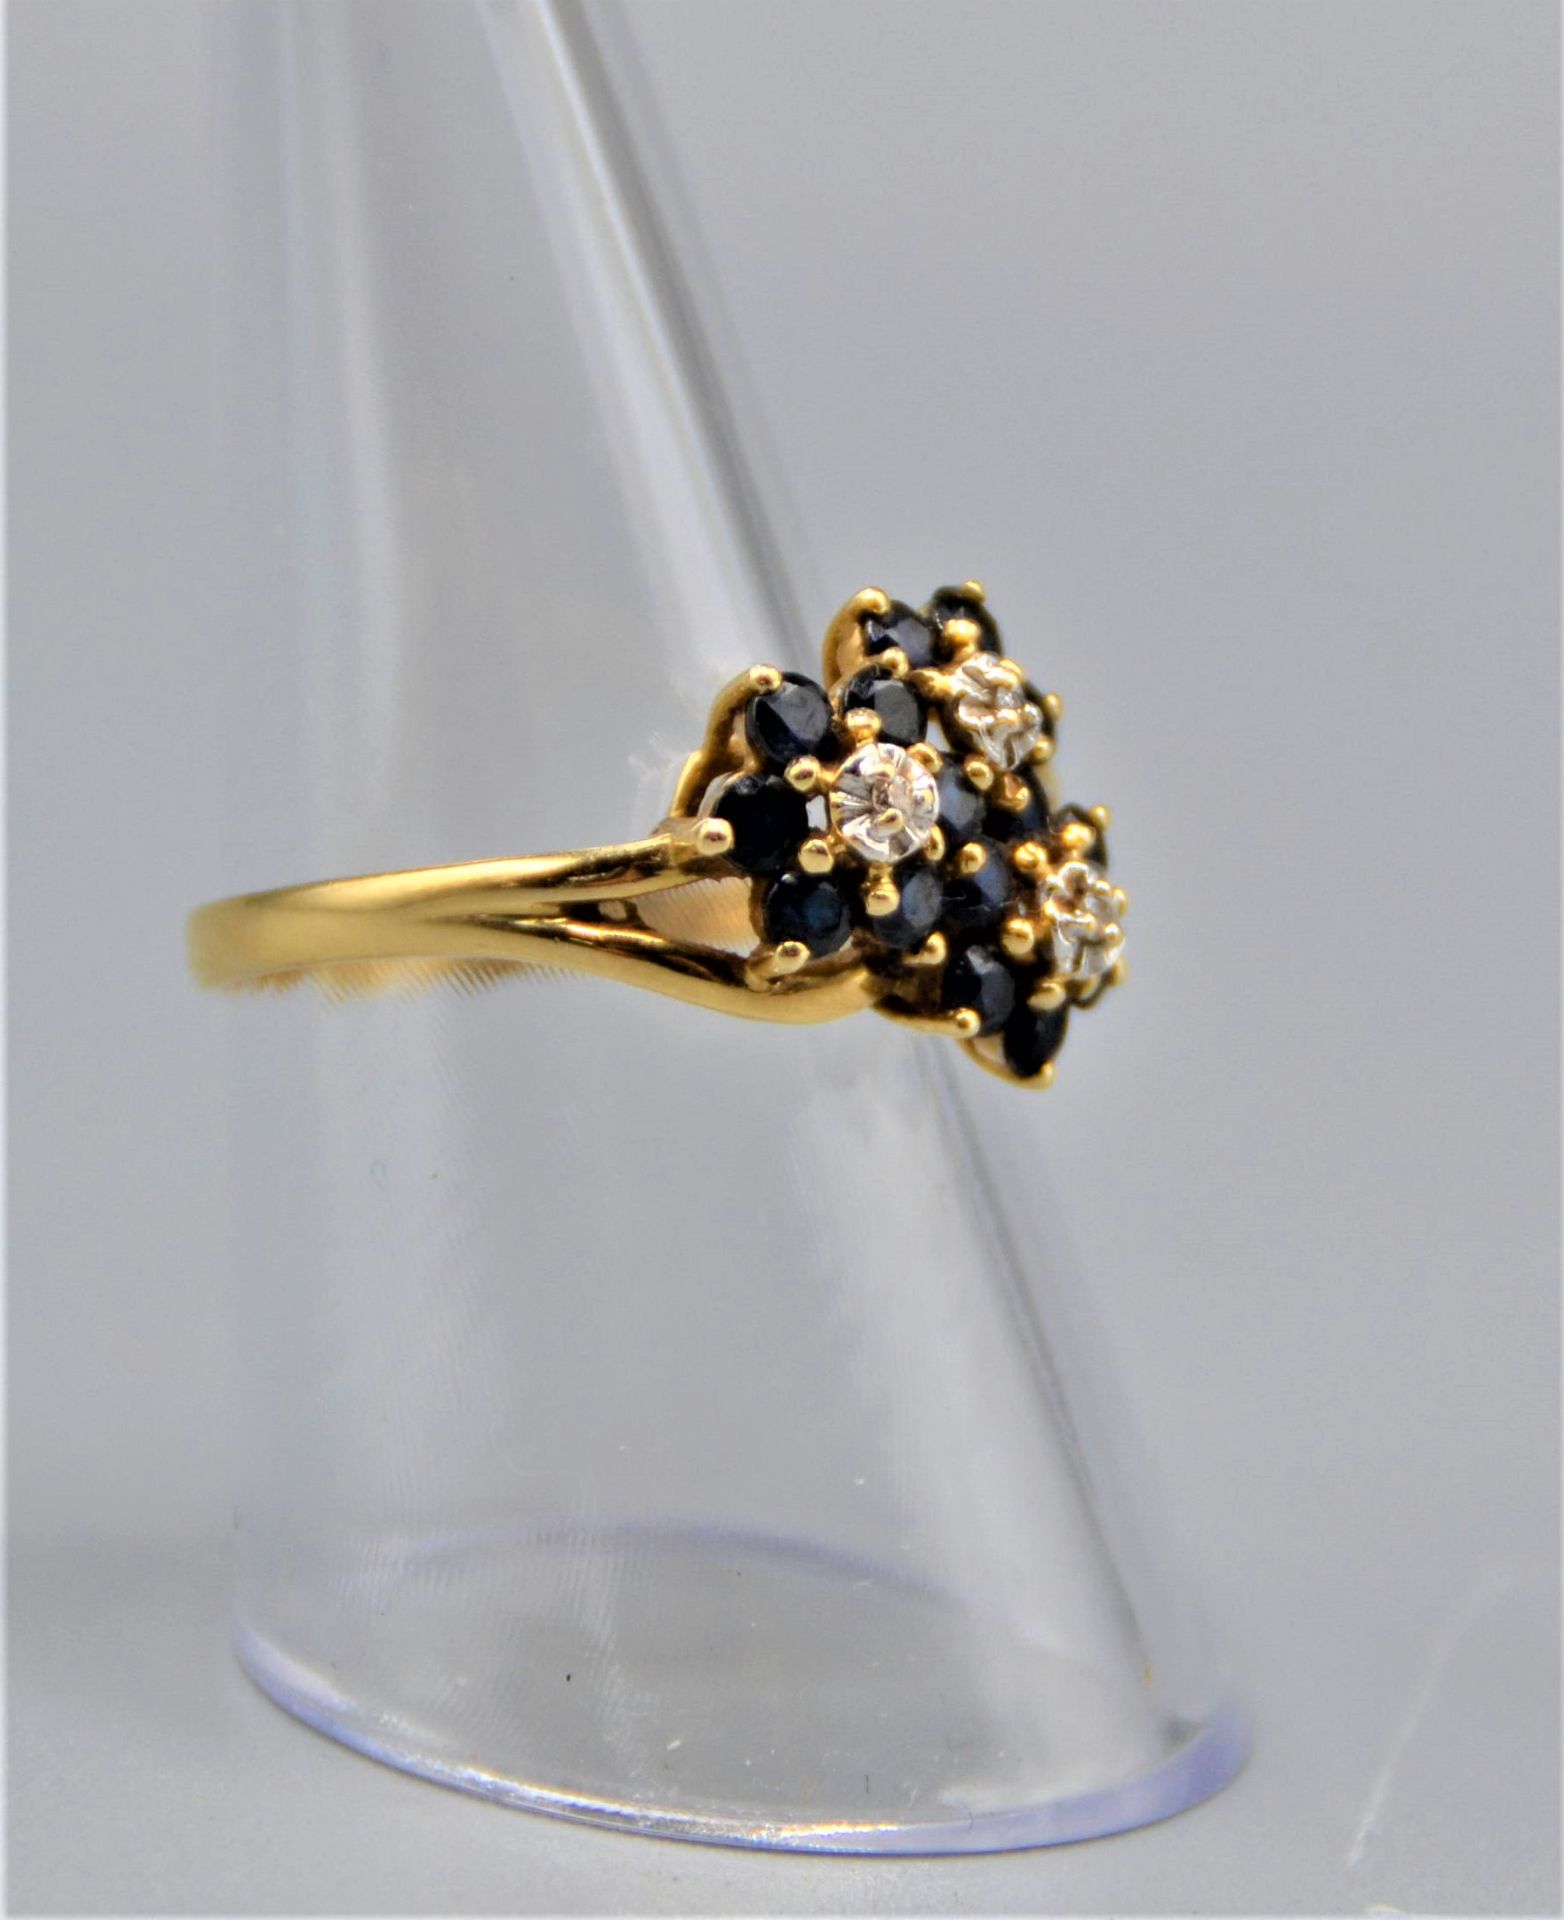 Goldring 585 mit Saphiren Diamanten Blütenform 2,9g Ø 18mm - Image 2 of 3